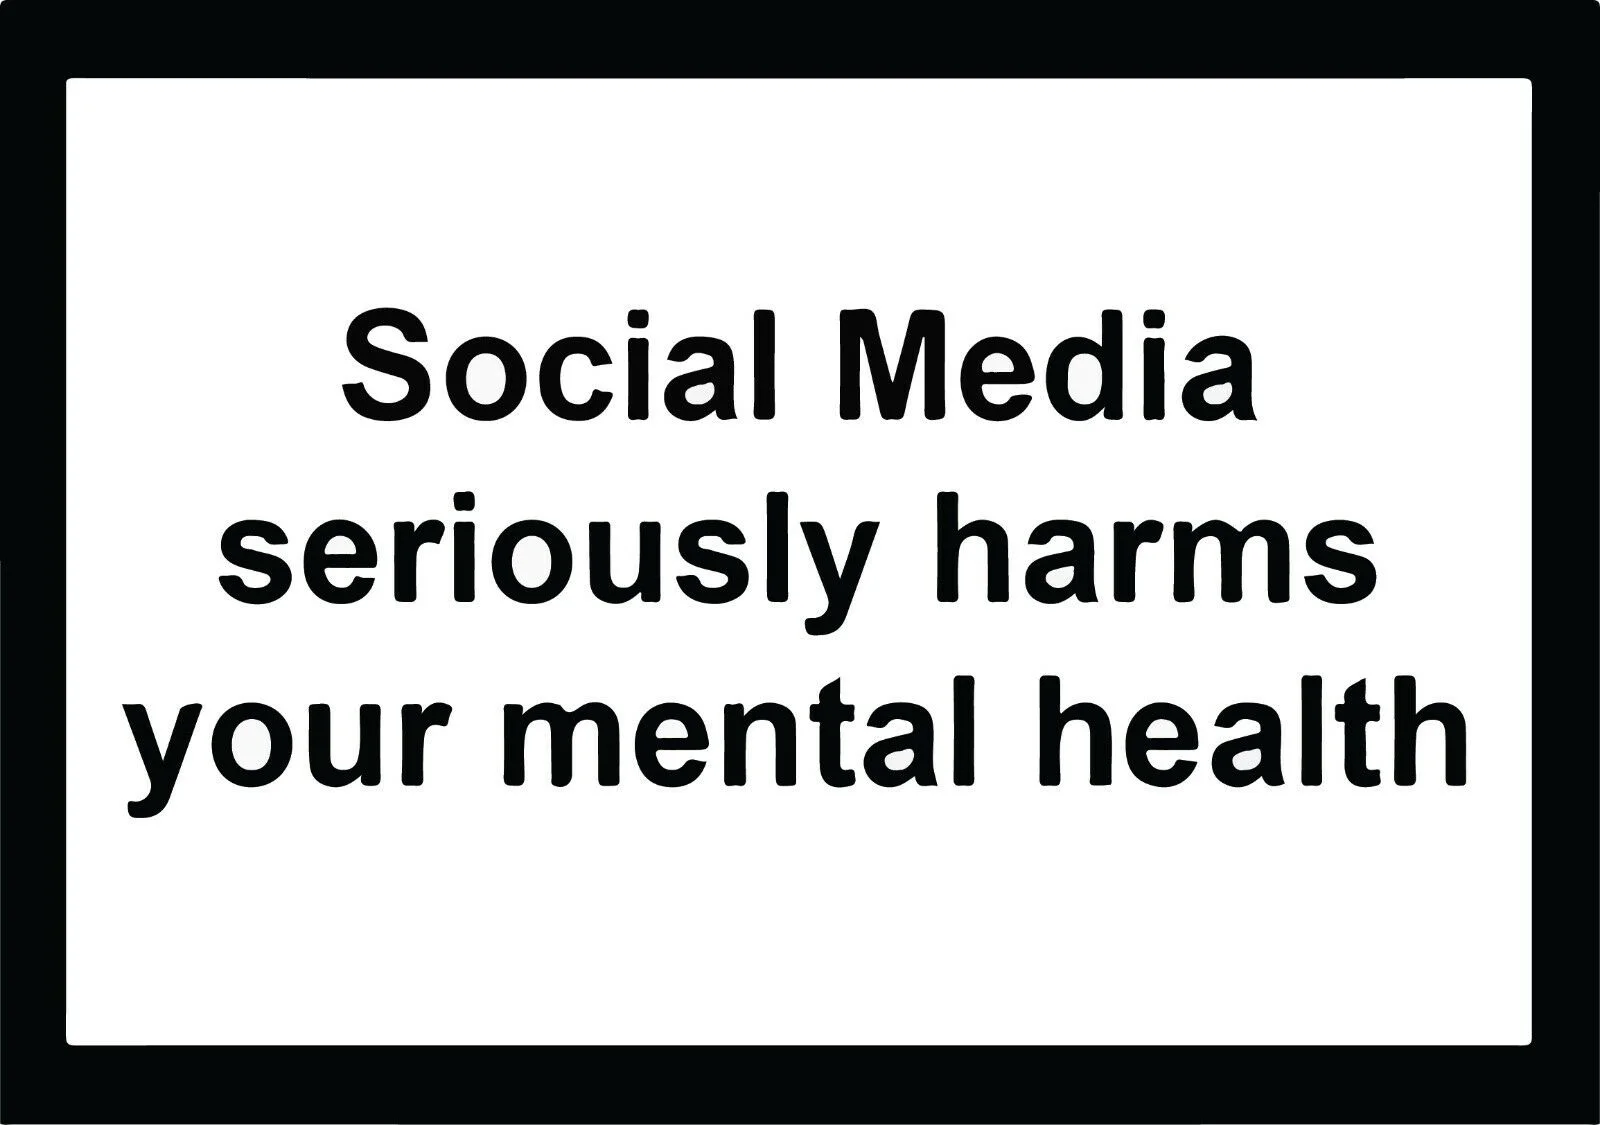 Виниловая наклейка для социальных сетей Instagram Twitter Серьезно вредит вашему психическому здоровью